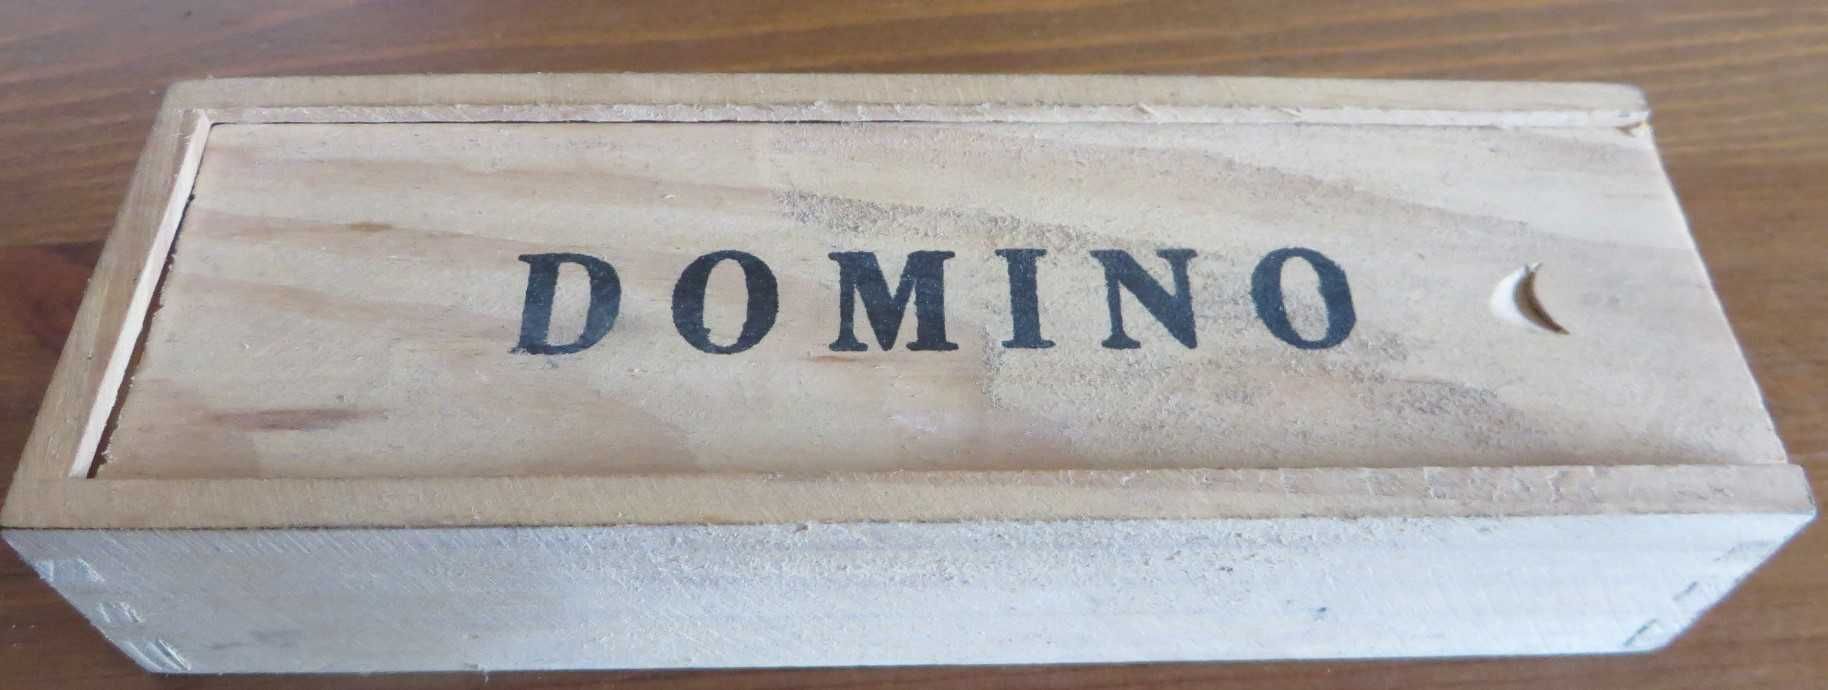 Jogo Domino, Caixa madeira